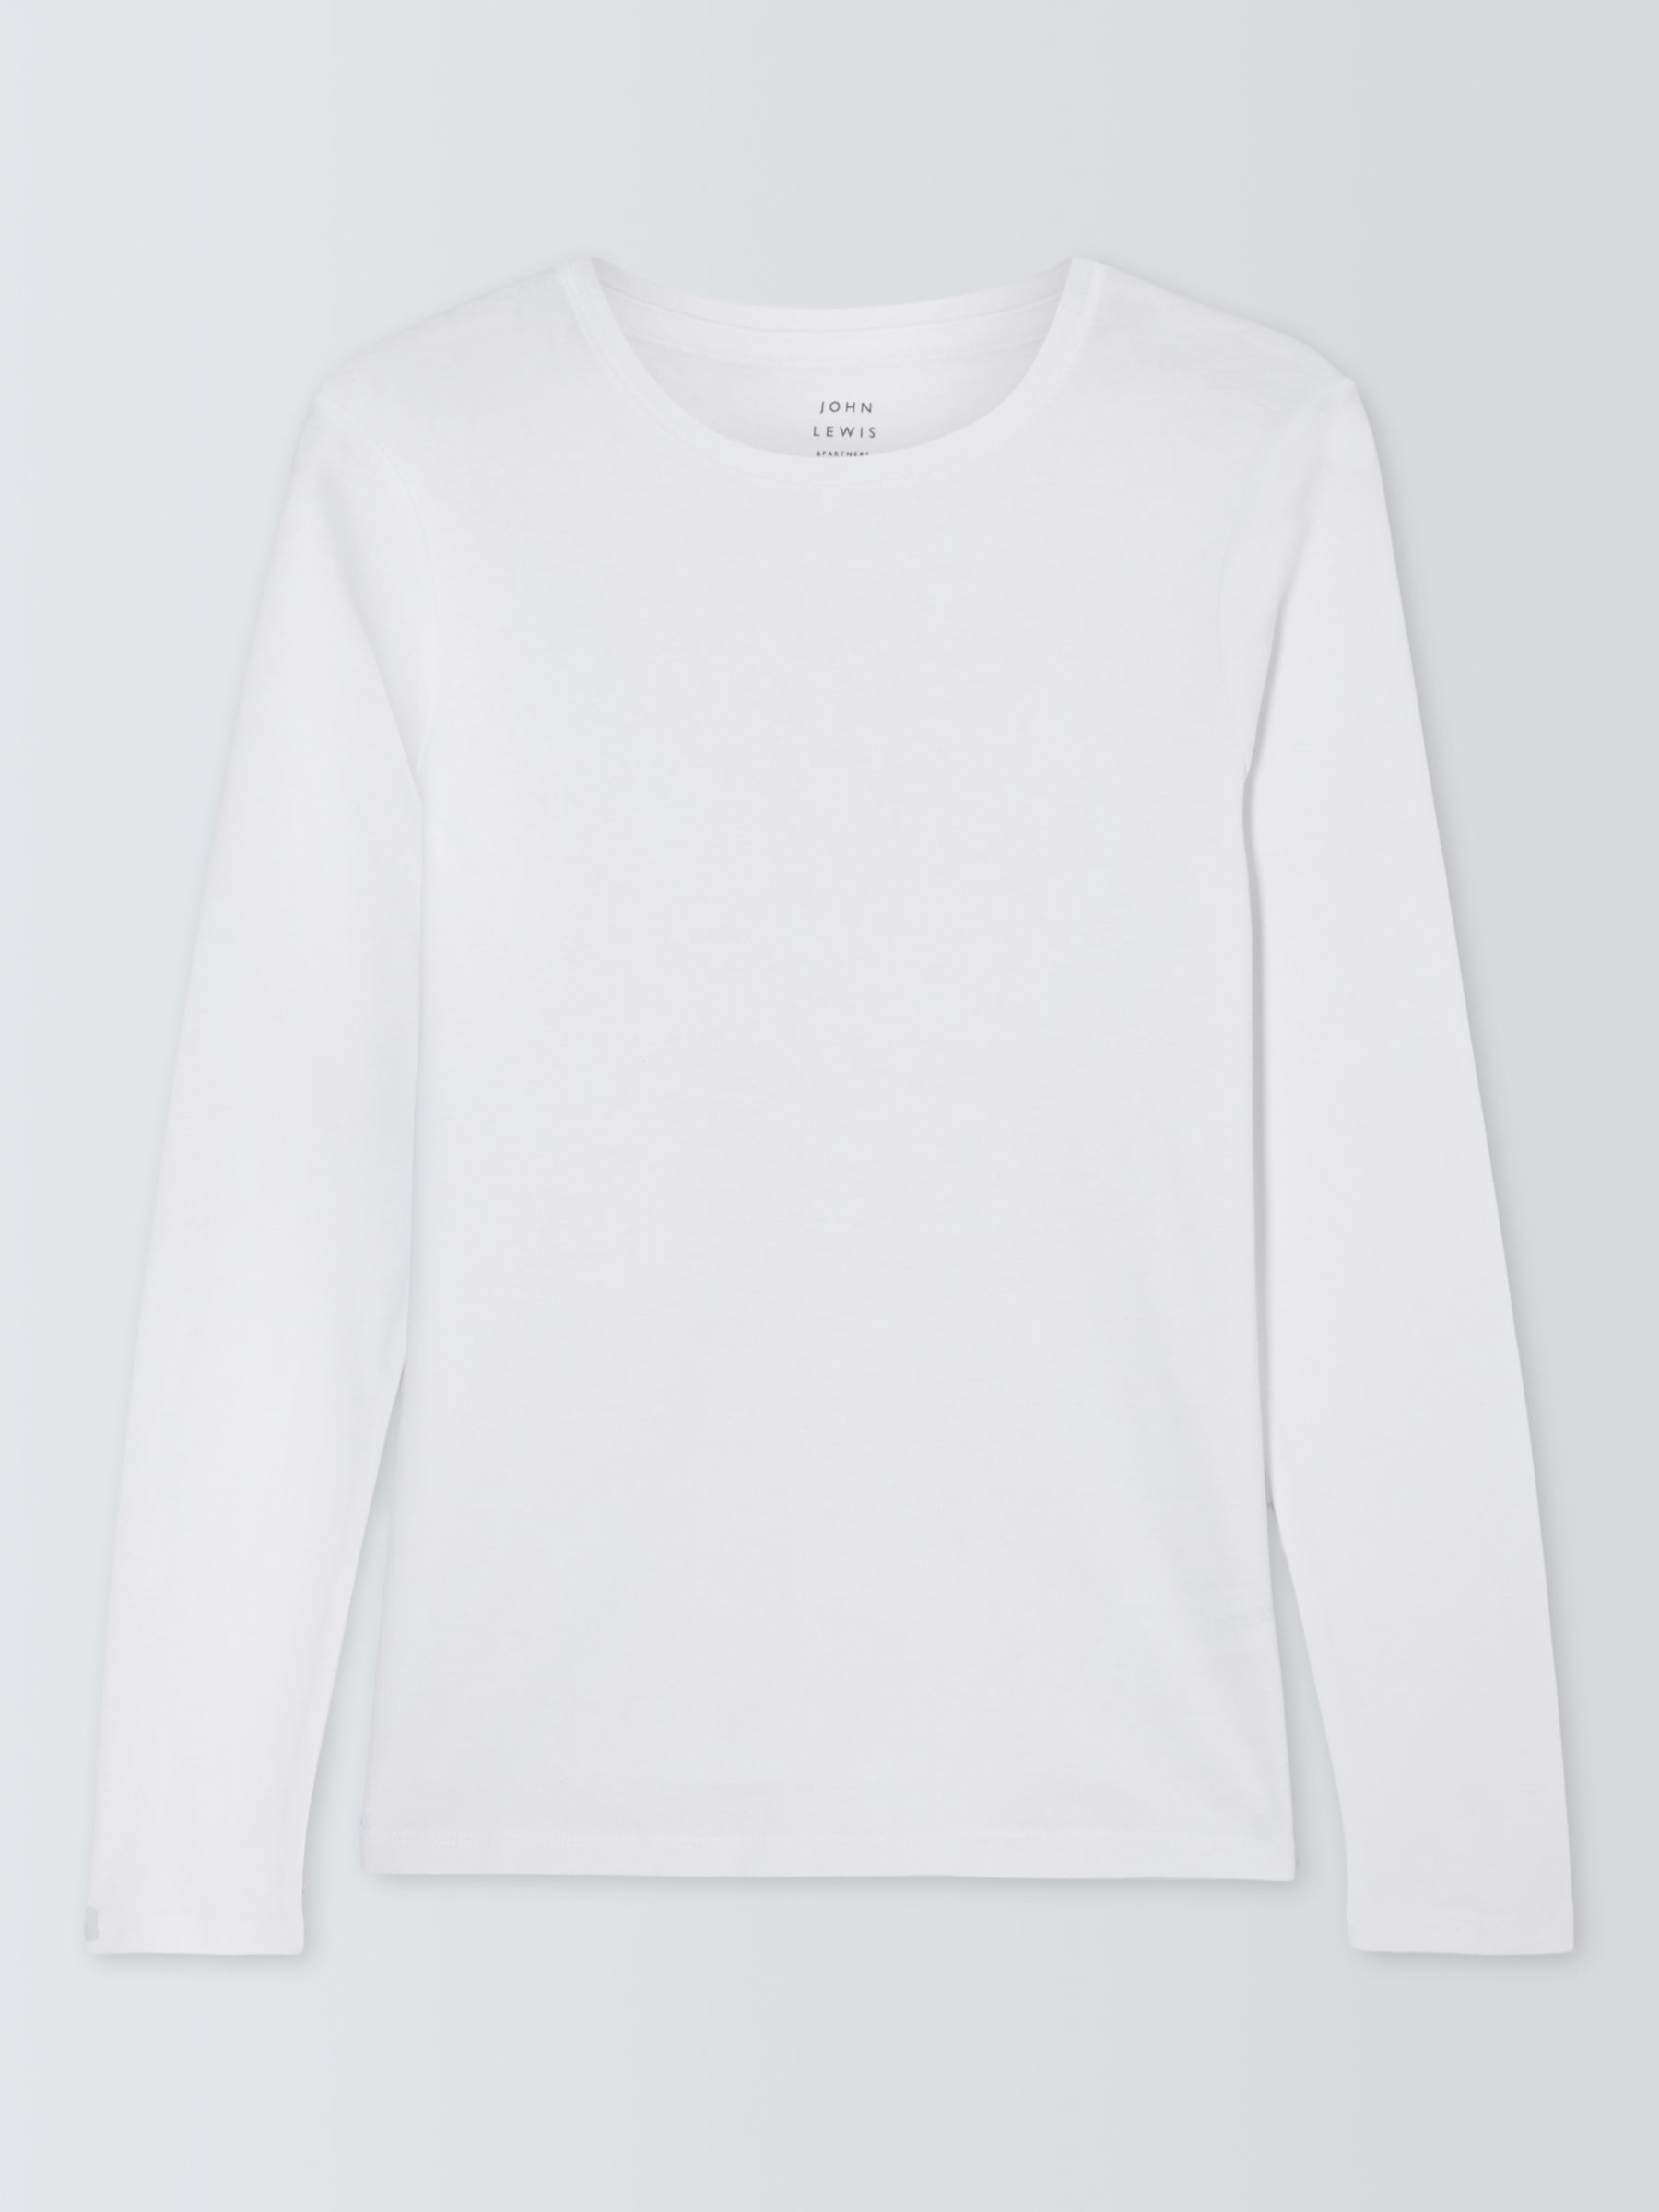 John Lewis Organic Cotton Long Sleeve Crew Neck T-Shirt, White at John ...